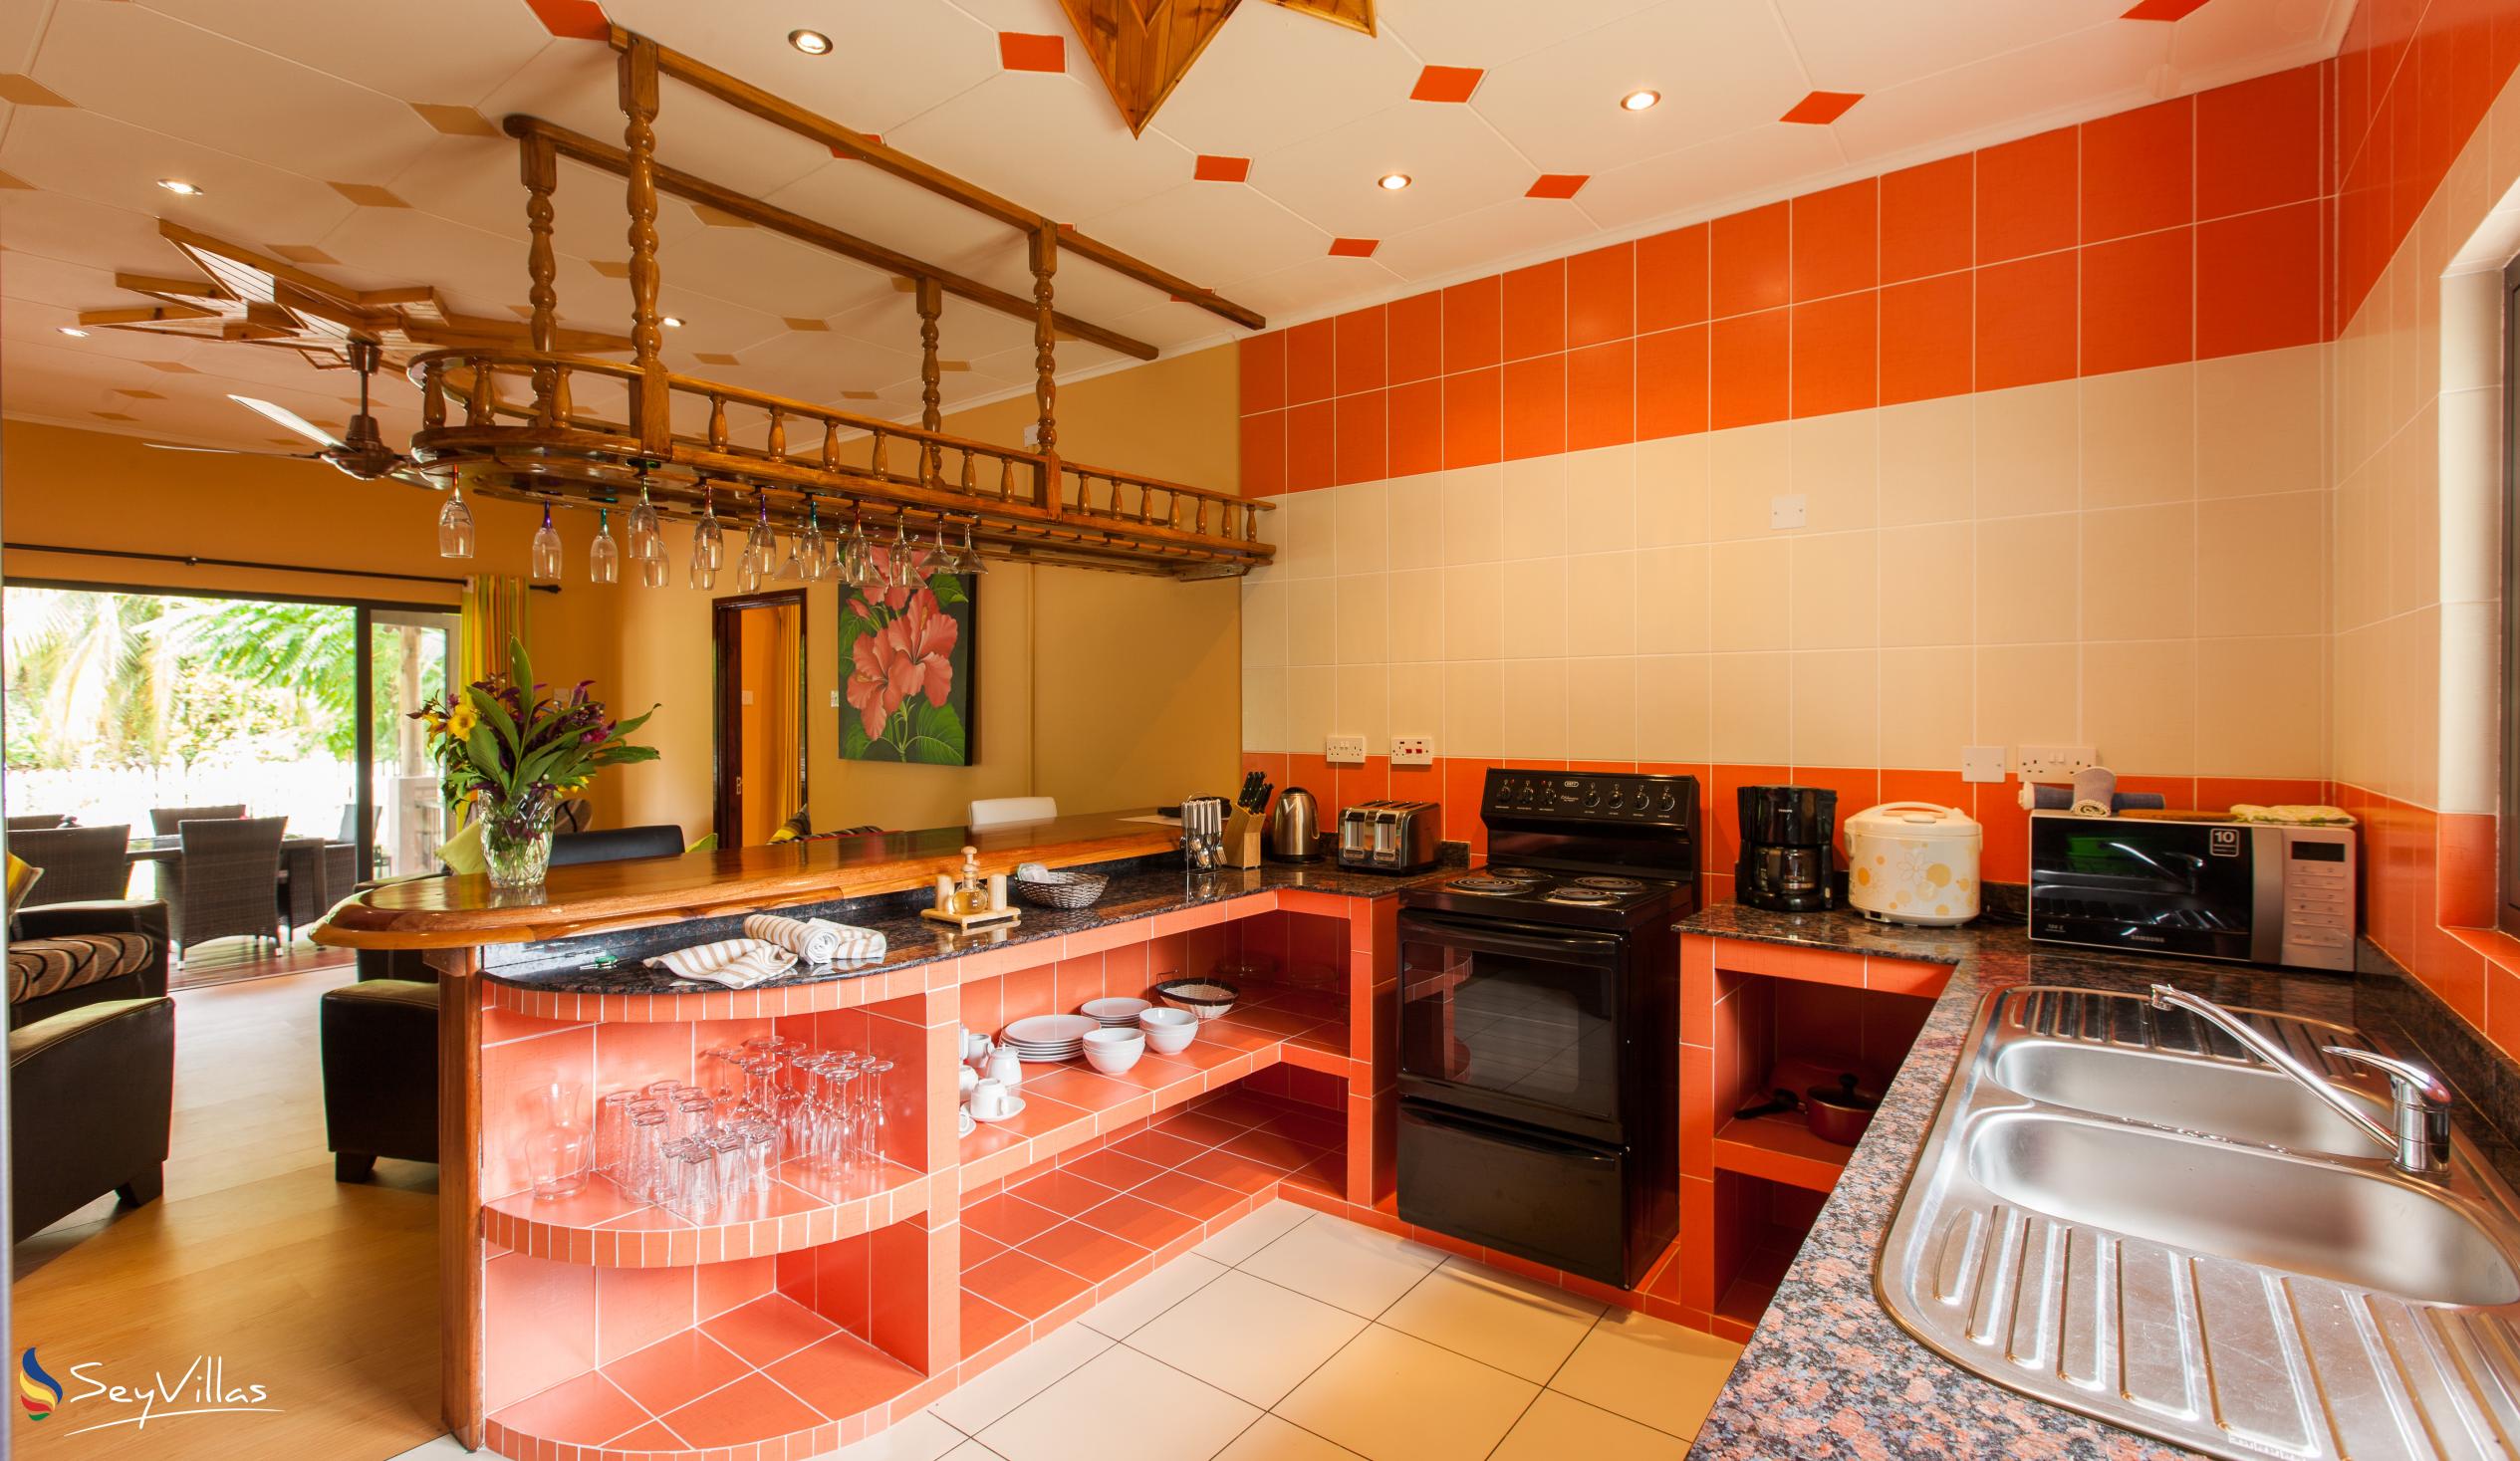 Photo 72: Casa de Leela - 2-Bedroom Luxury Bungalow with Private Plunge Pool - La Digue (Seychelles)